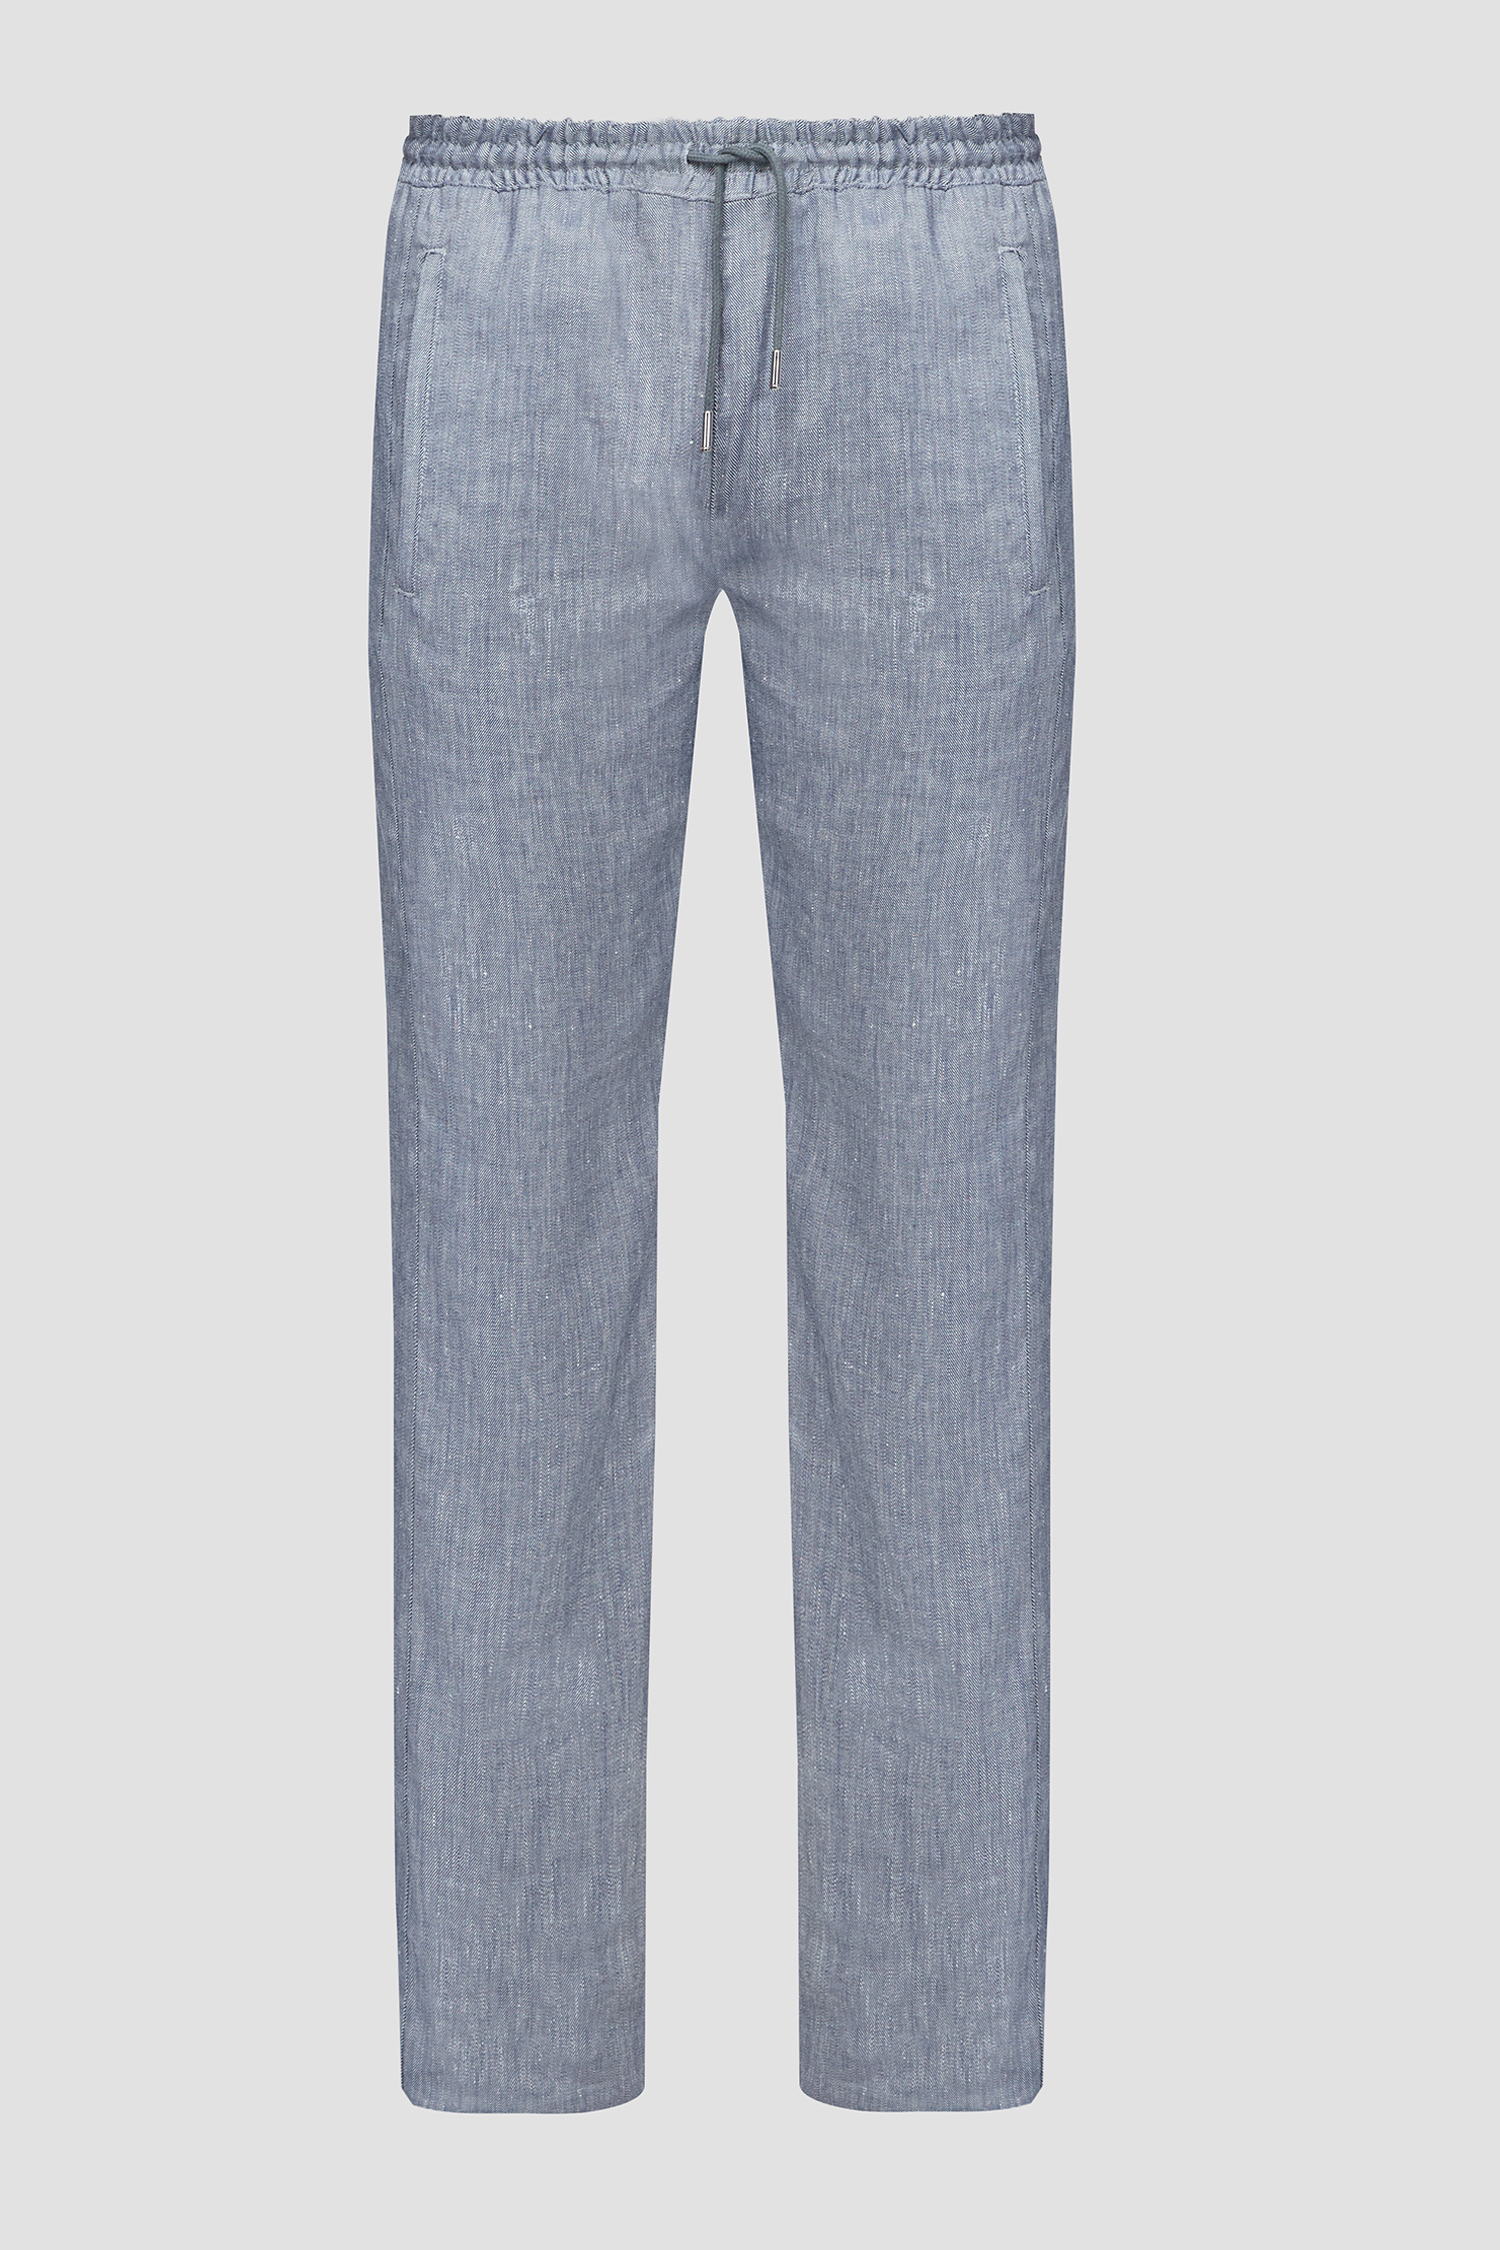 Мужские синие льняные брюки Karl Lagerfeld 532819.255815;690